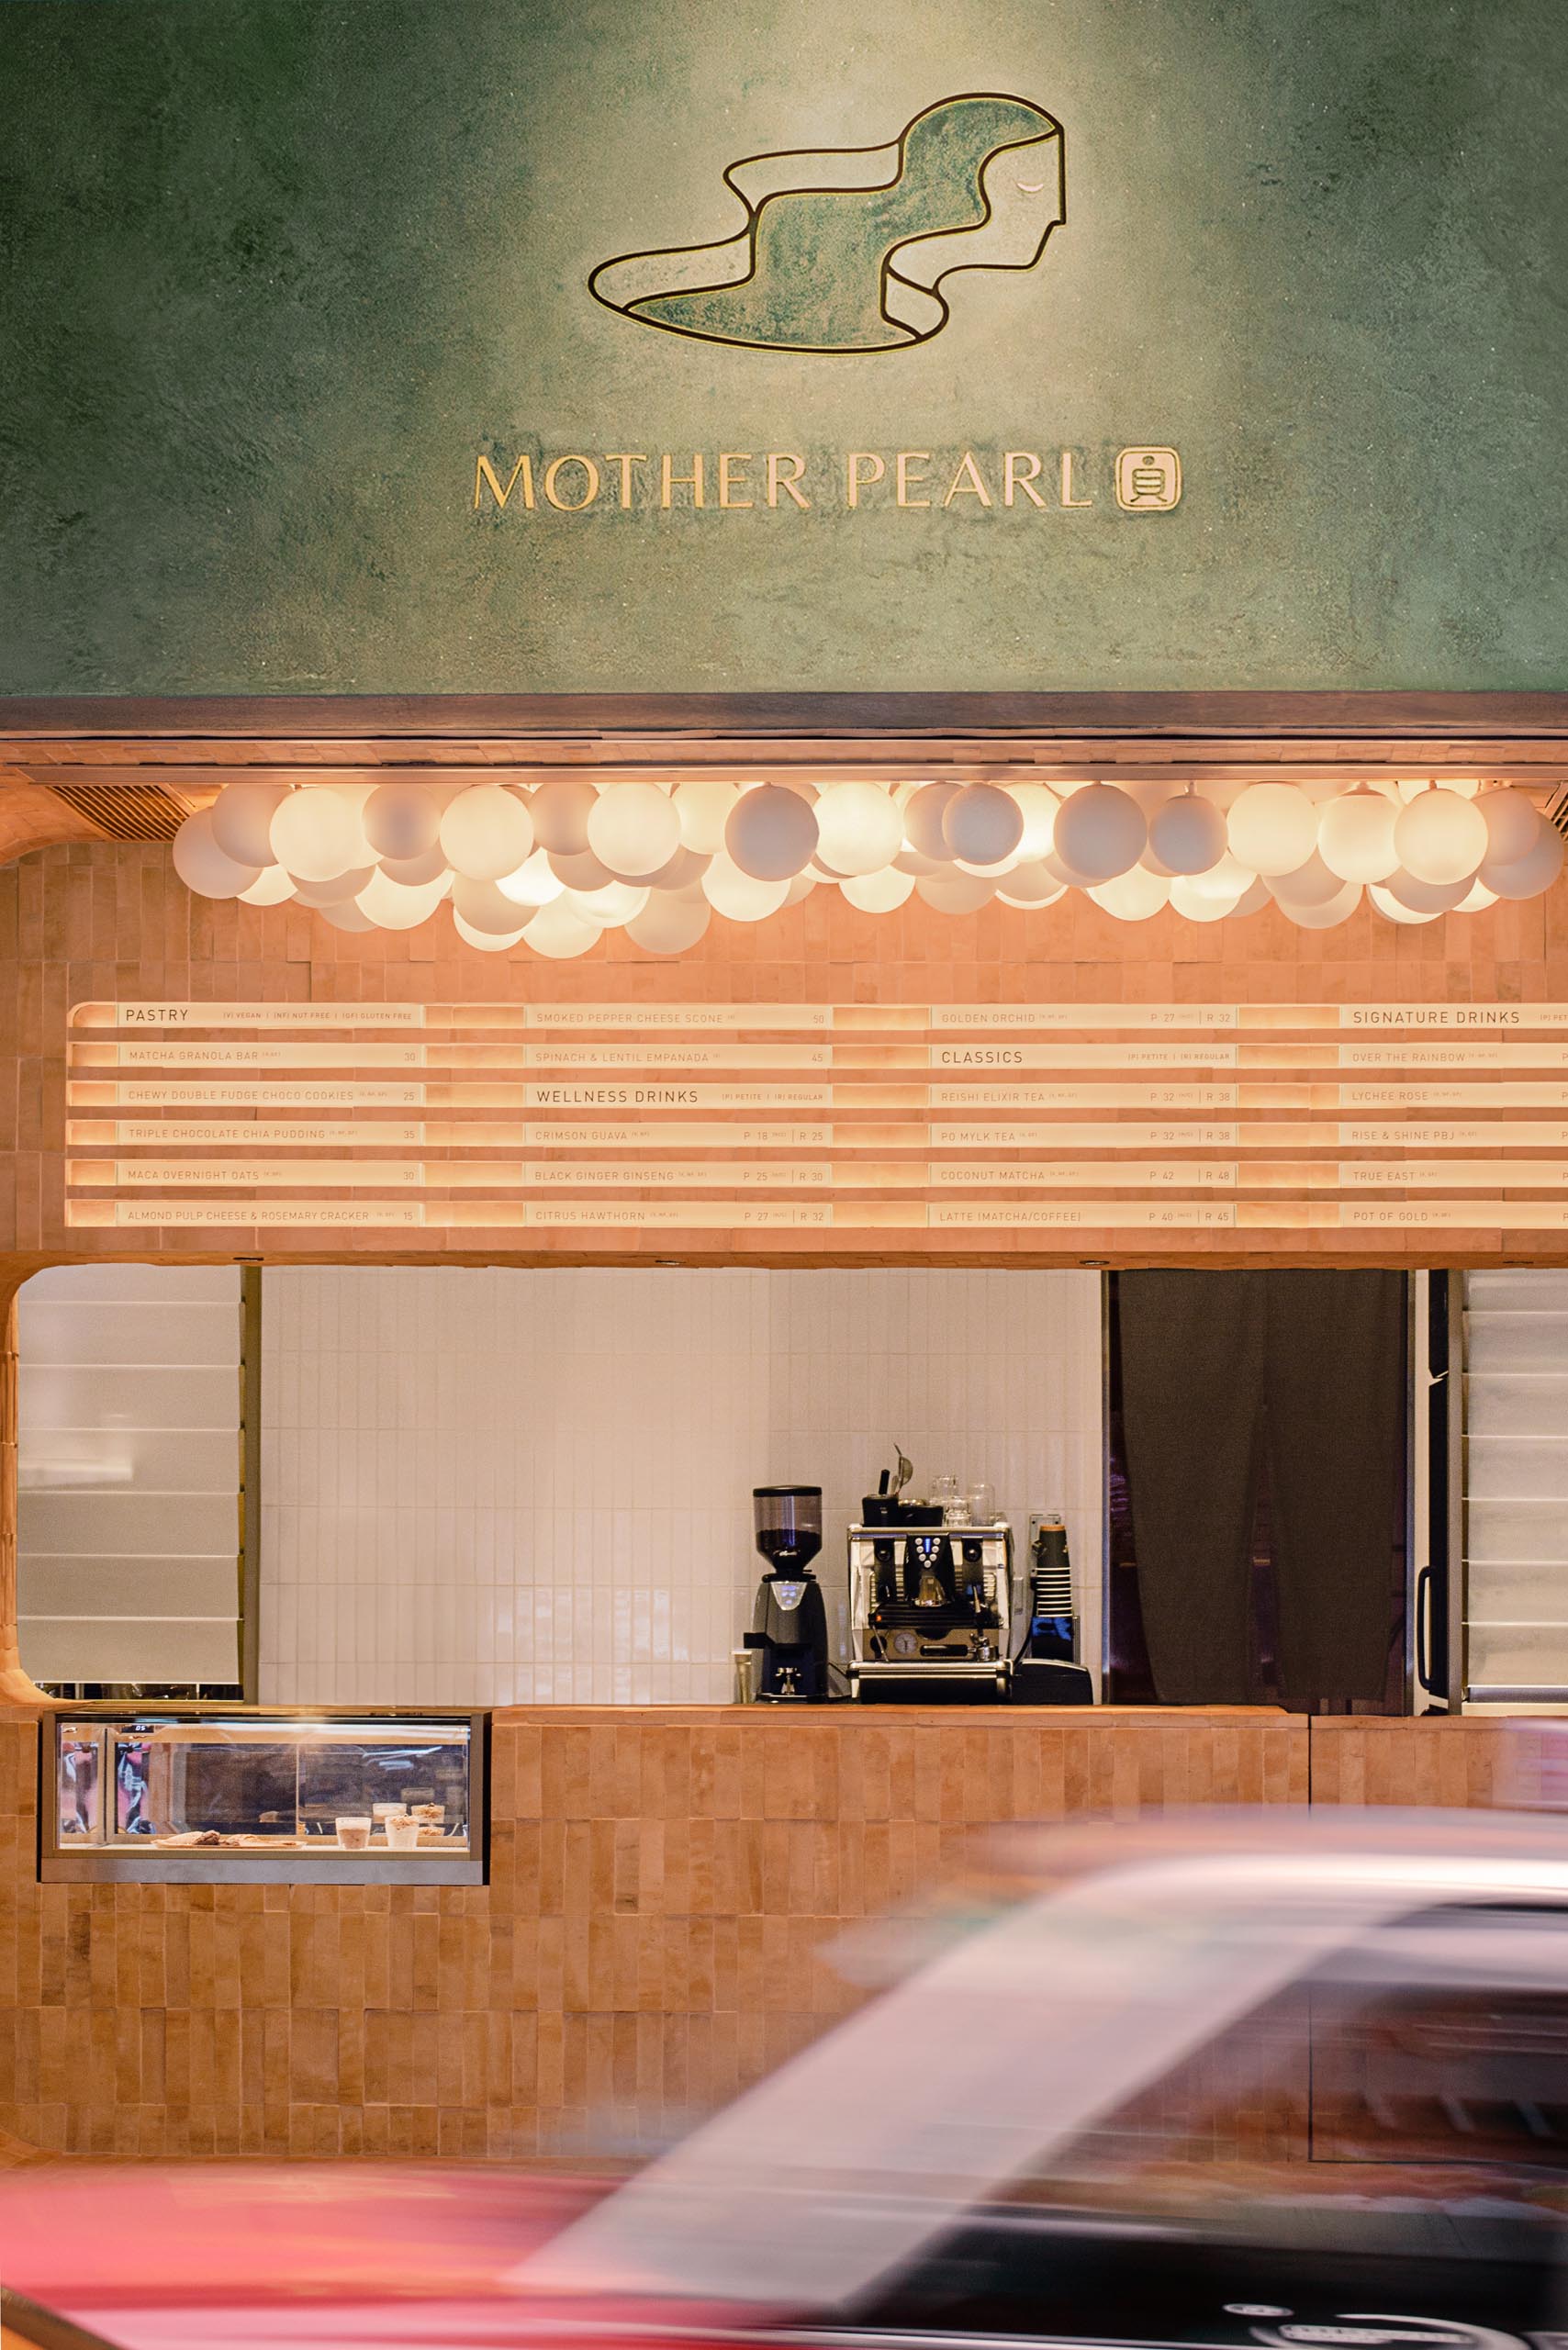 Темно-оливково-зеленый экстерьер этого чайного домика выделяется на фоне других магазинов в этом районе, а логотип выделяется на фасаде.